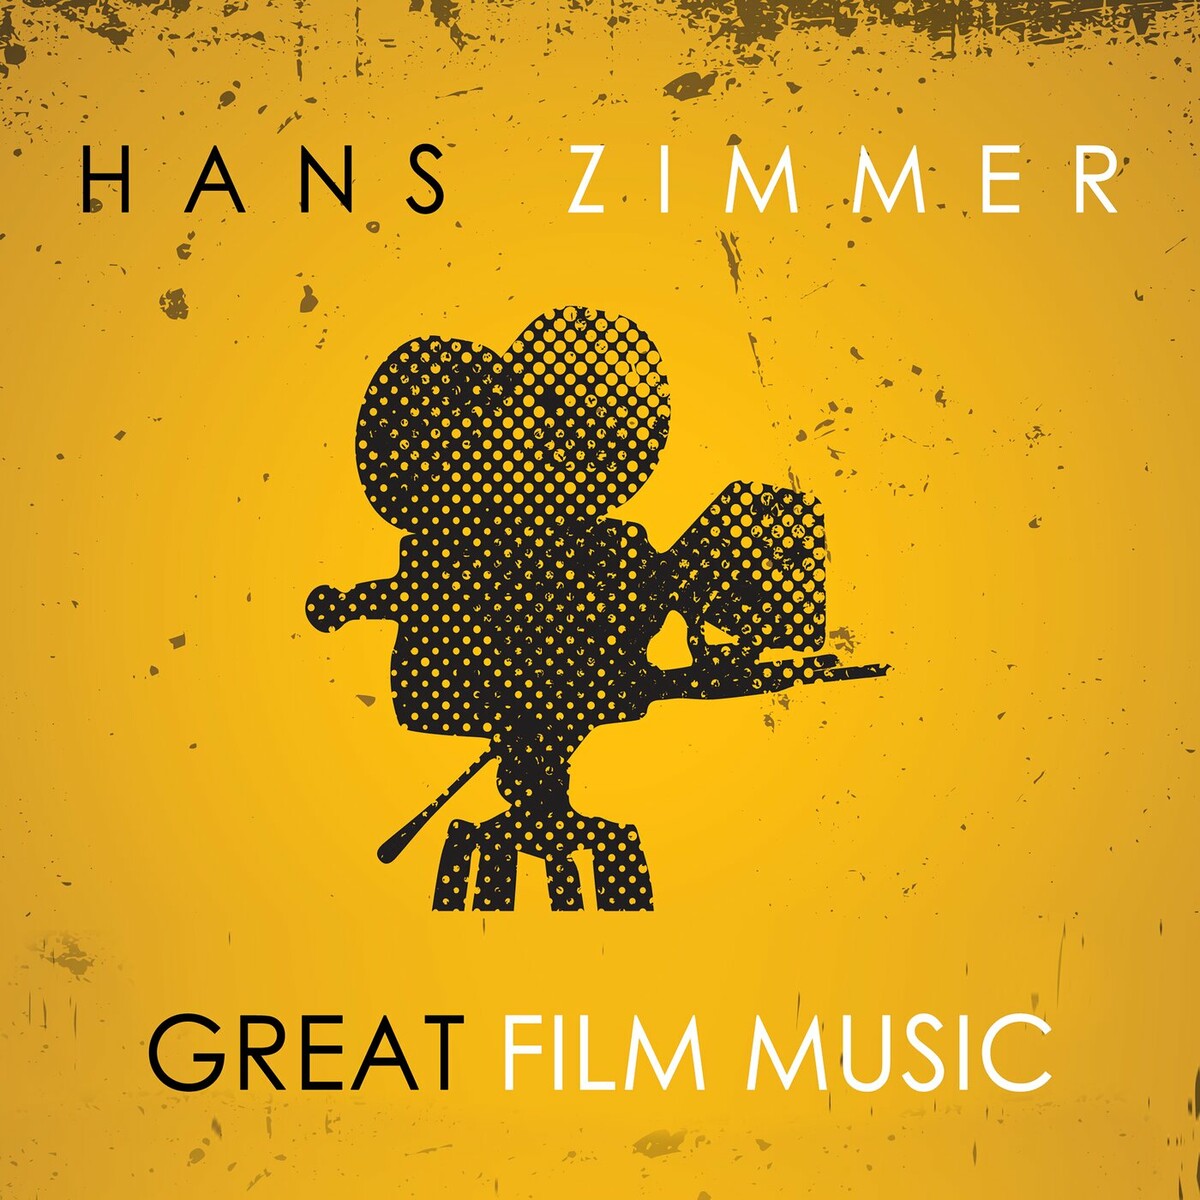 Hans Zimmer: Great Film Music -- Seeders: 9 -- Leechers: 0